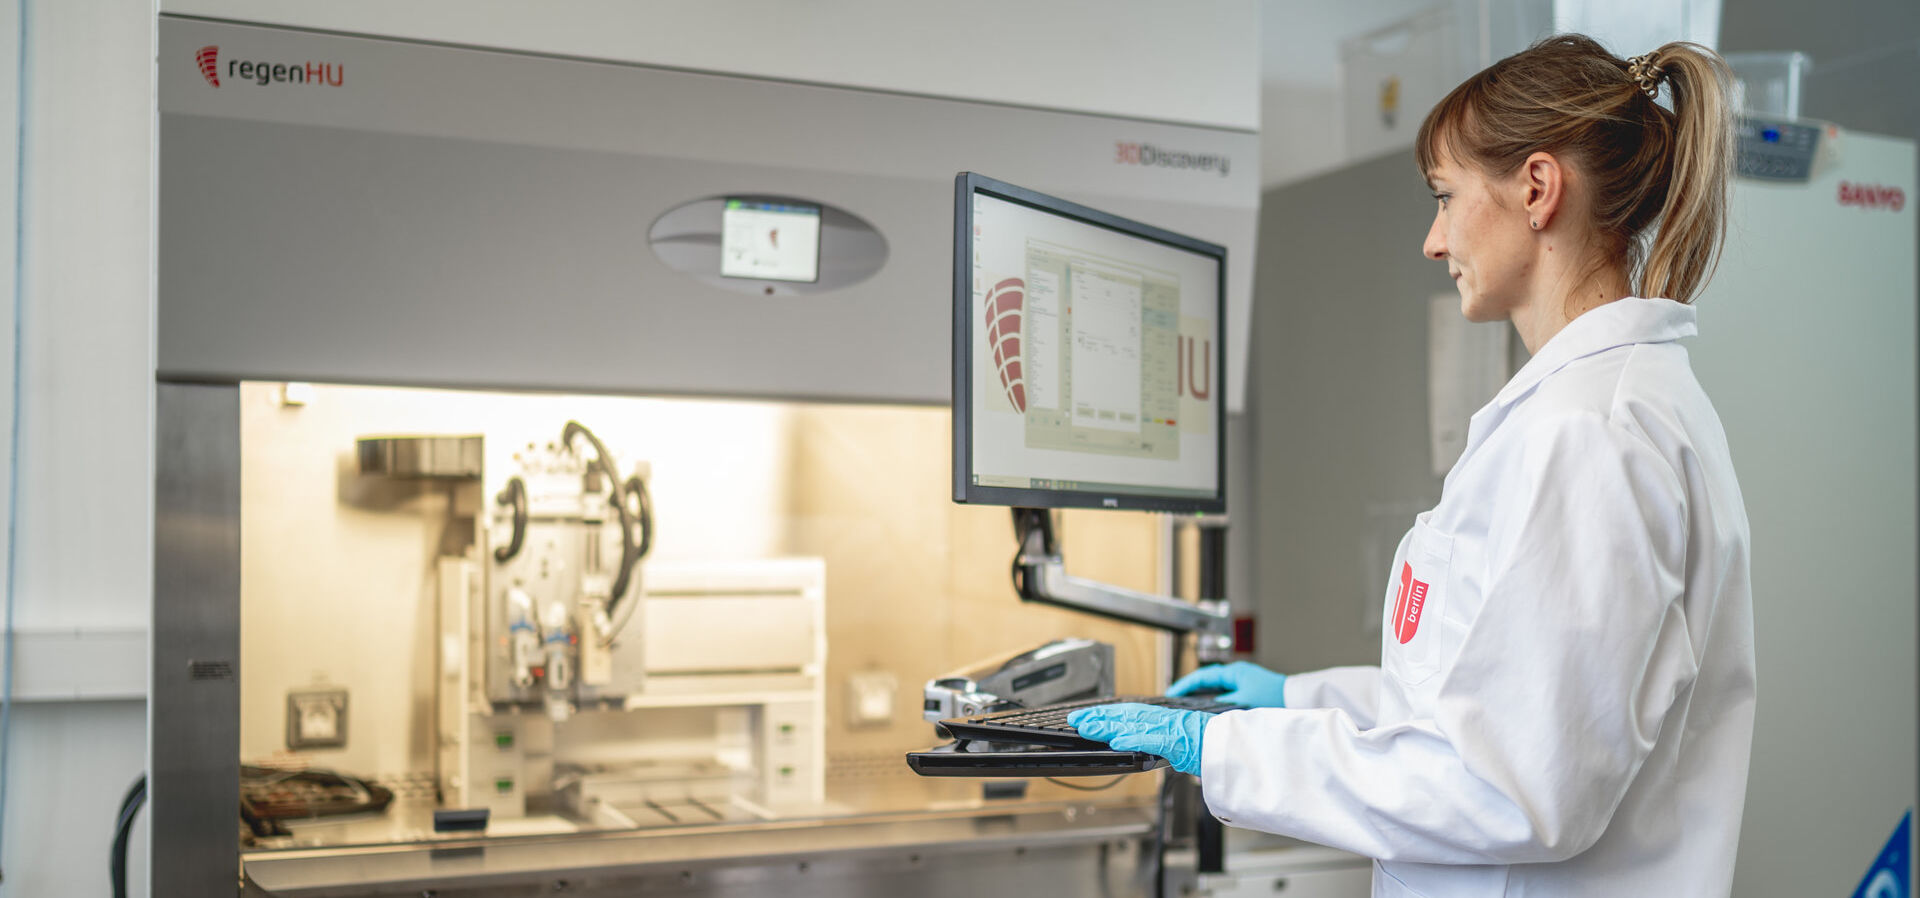 Eine junge Wissenschaftlerin steht an einem Monitor in einem Labor des Fachgebietes Angewandte Biochemie und schaut auf einen Bildschirm, dahinter Laborgeräte